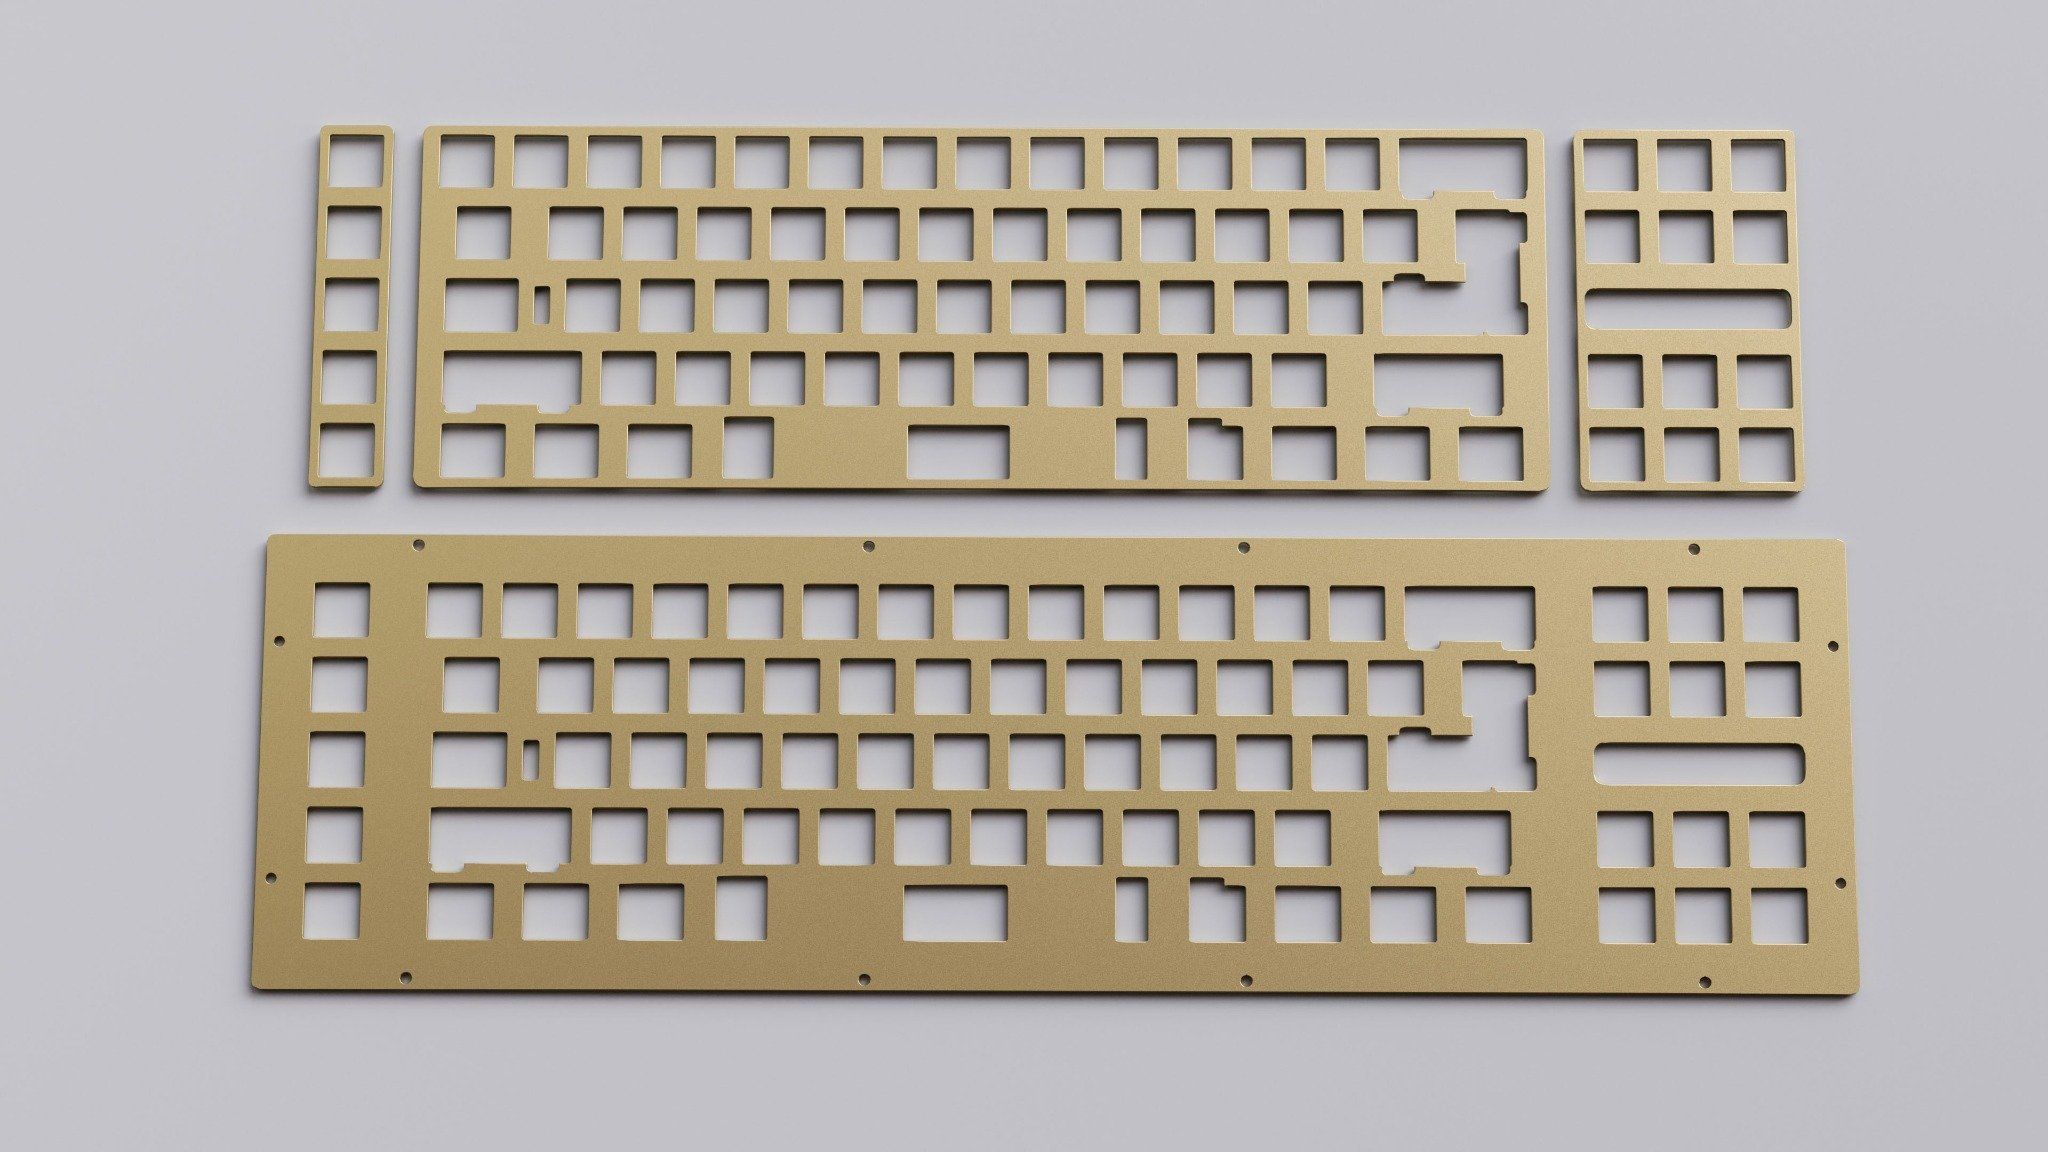  [Order] DR 70F Keyboard Kit 